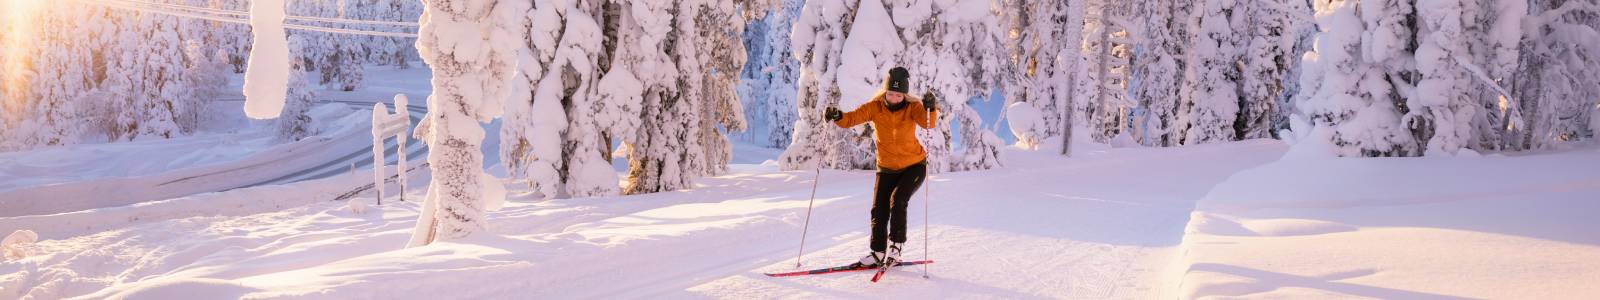 Langlaufen Lapland: de klassieke wintersport